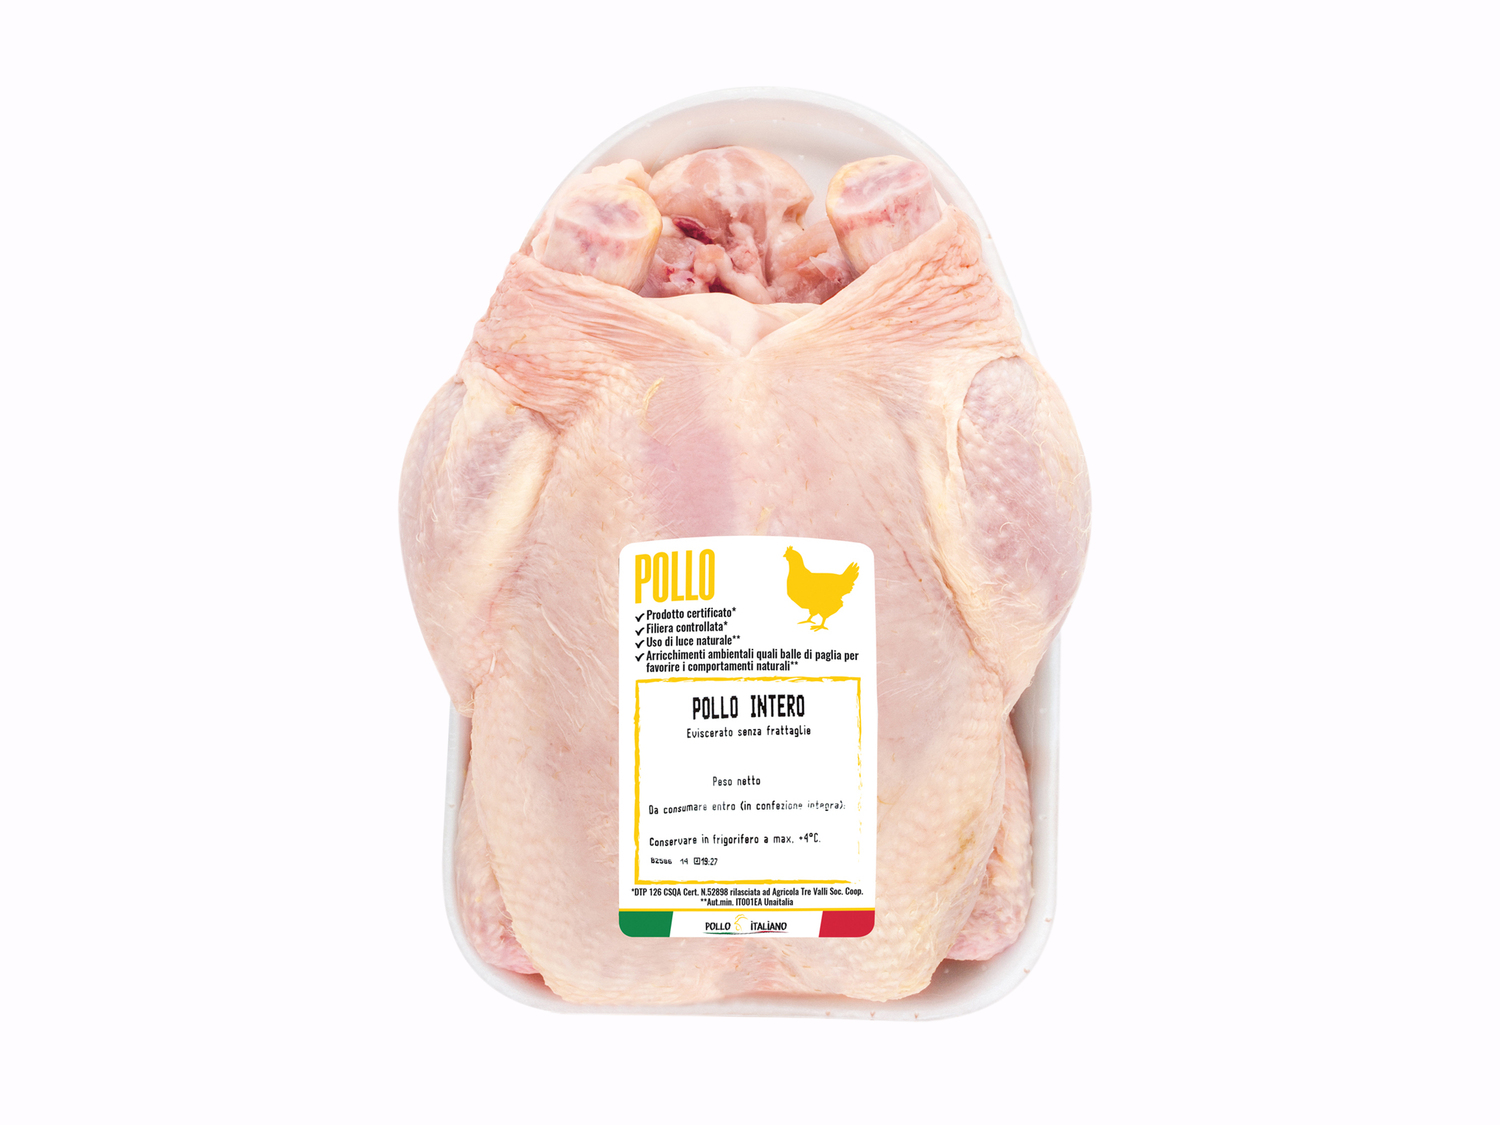 Pollo intero , prezzo 3.19 € 
- Da polli allevati con:
- Uso di luce naturale
- ...